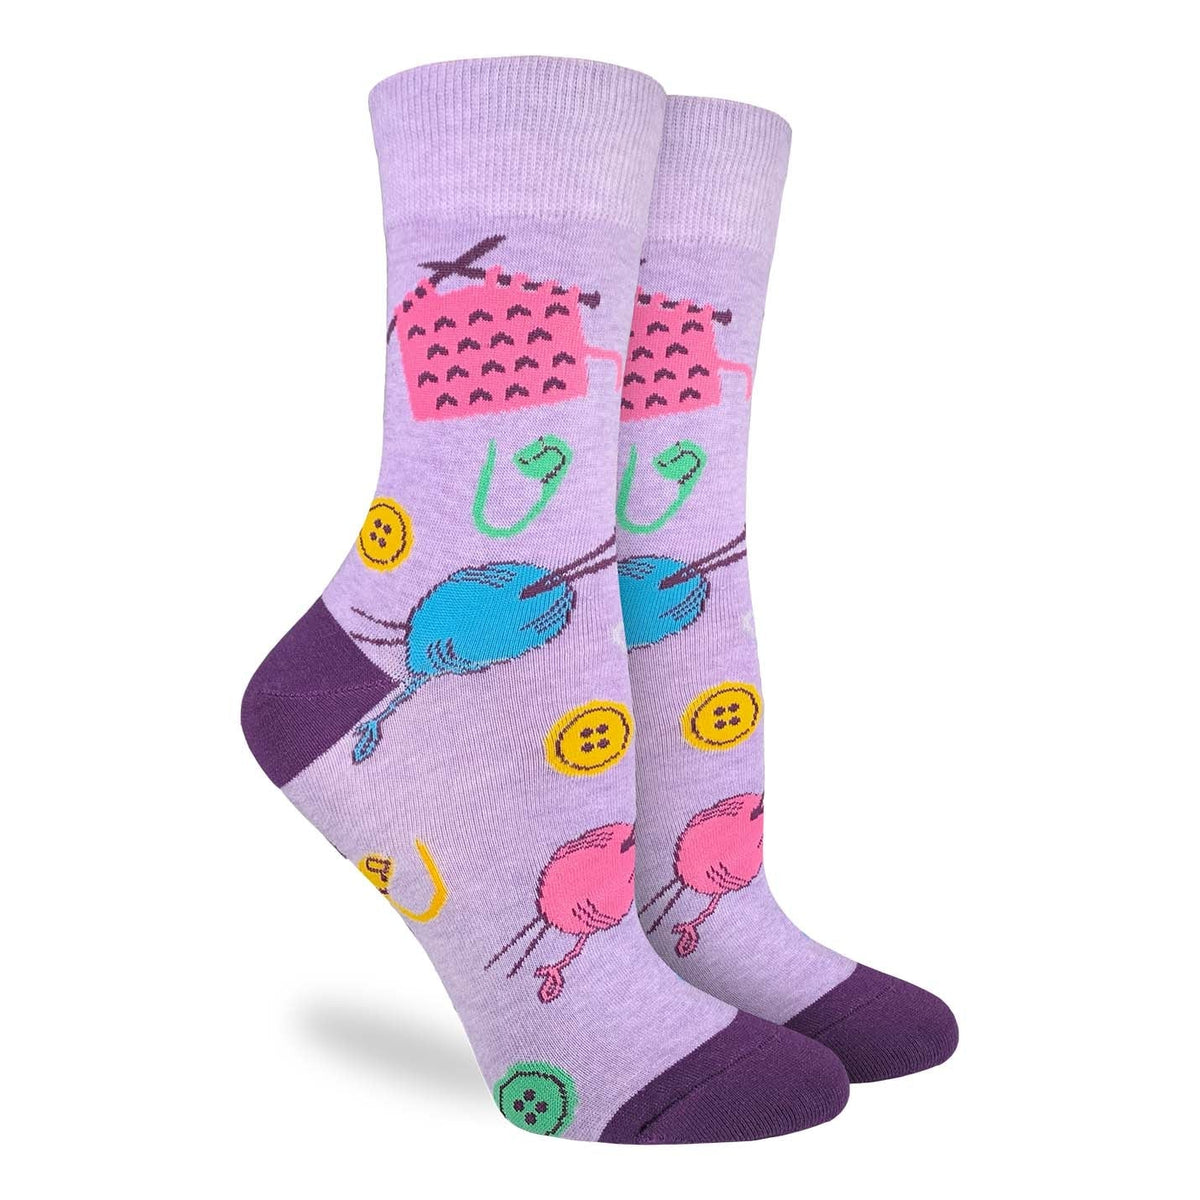 Women's Knitting Socks